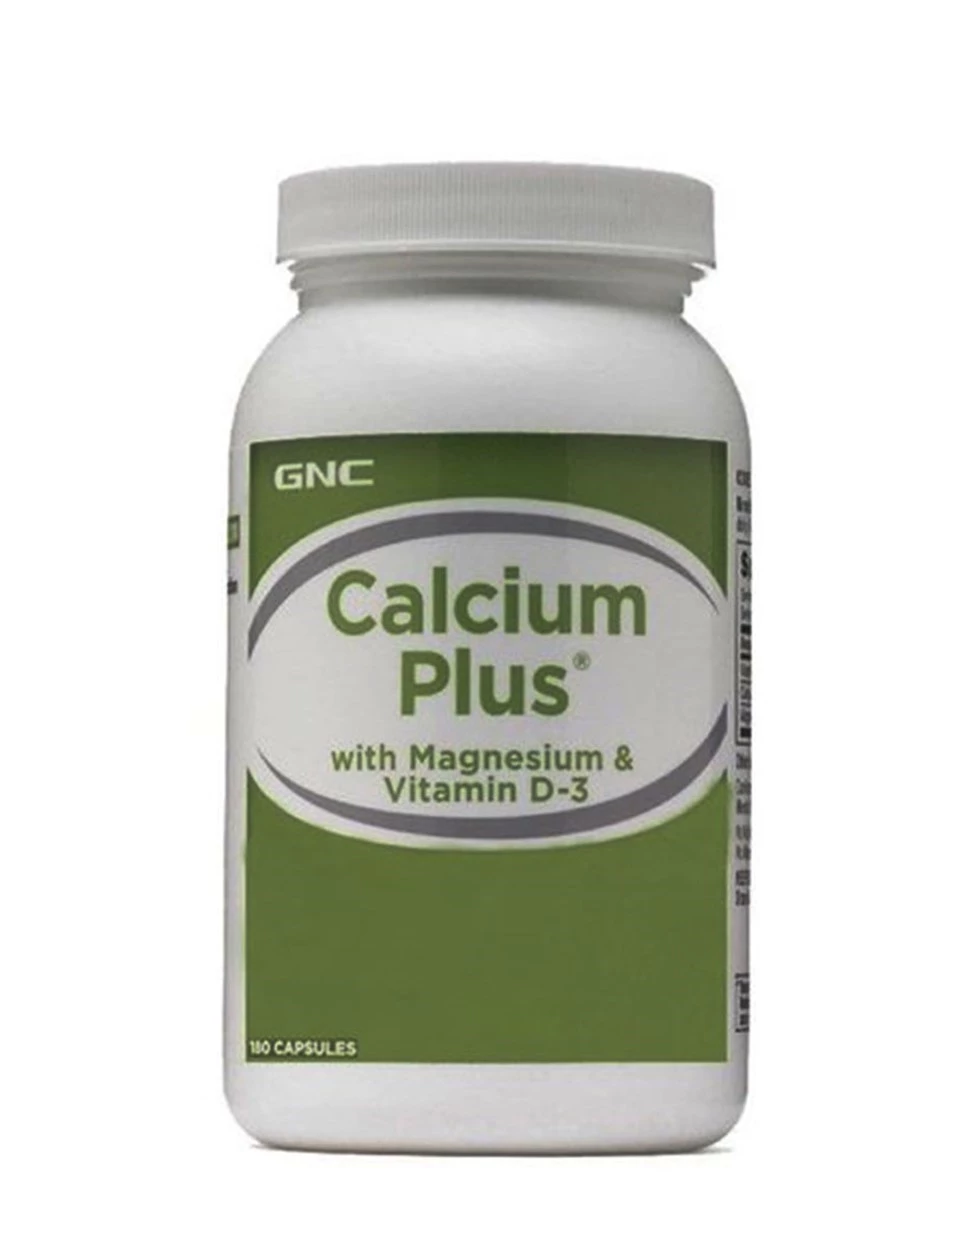 GNC Calcium Plus Vitamin D-3 Takviye Edici Gıda 180 Kapsül